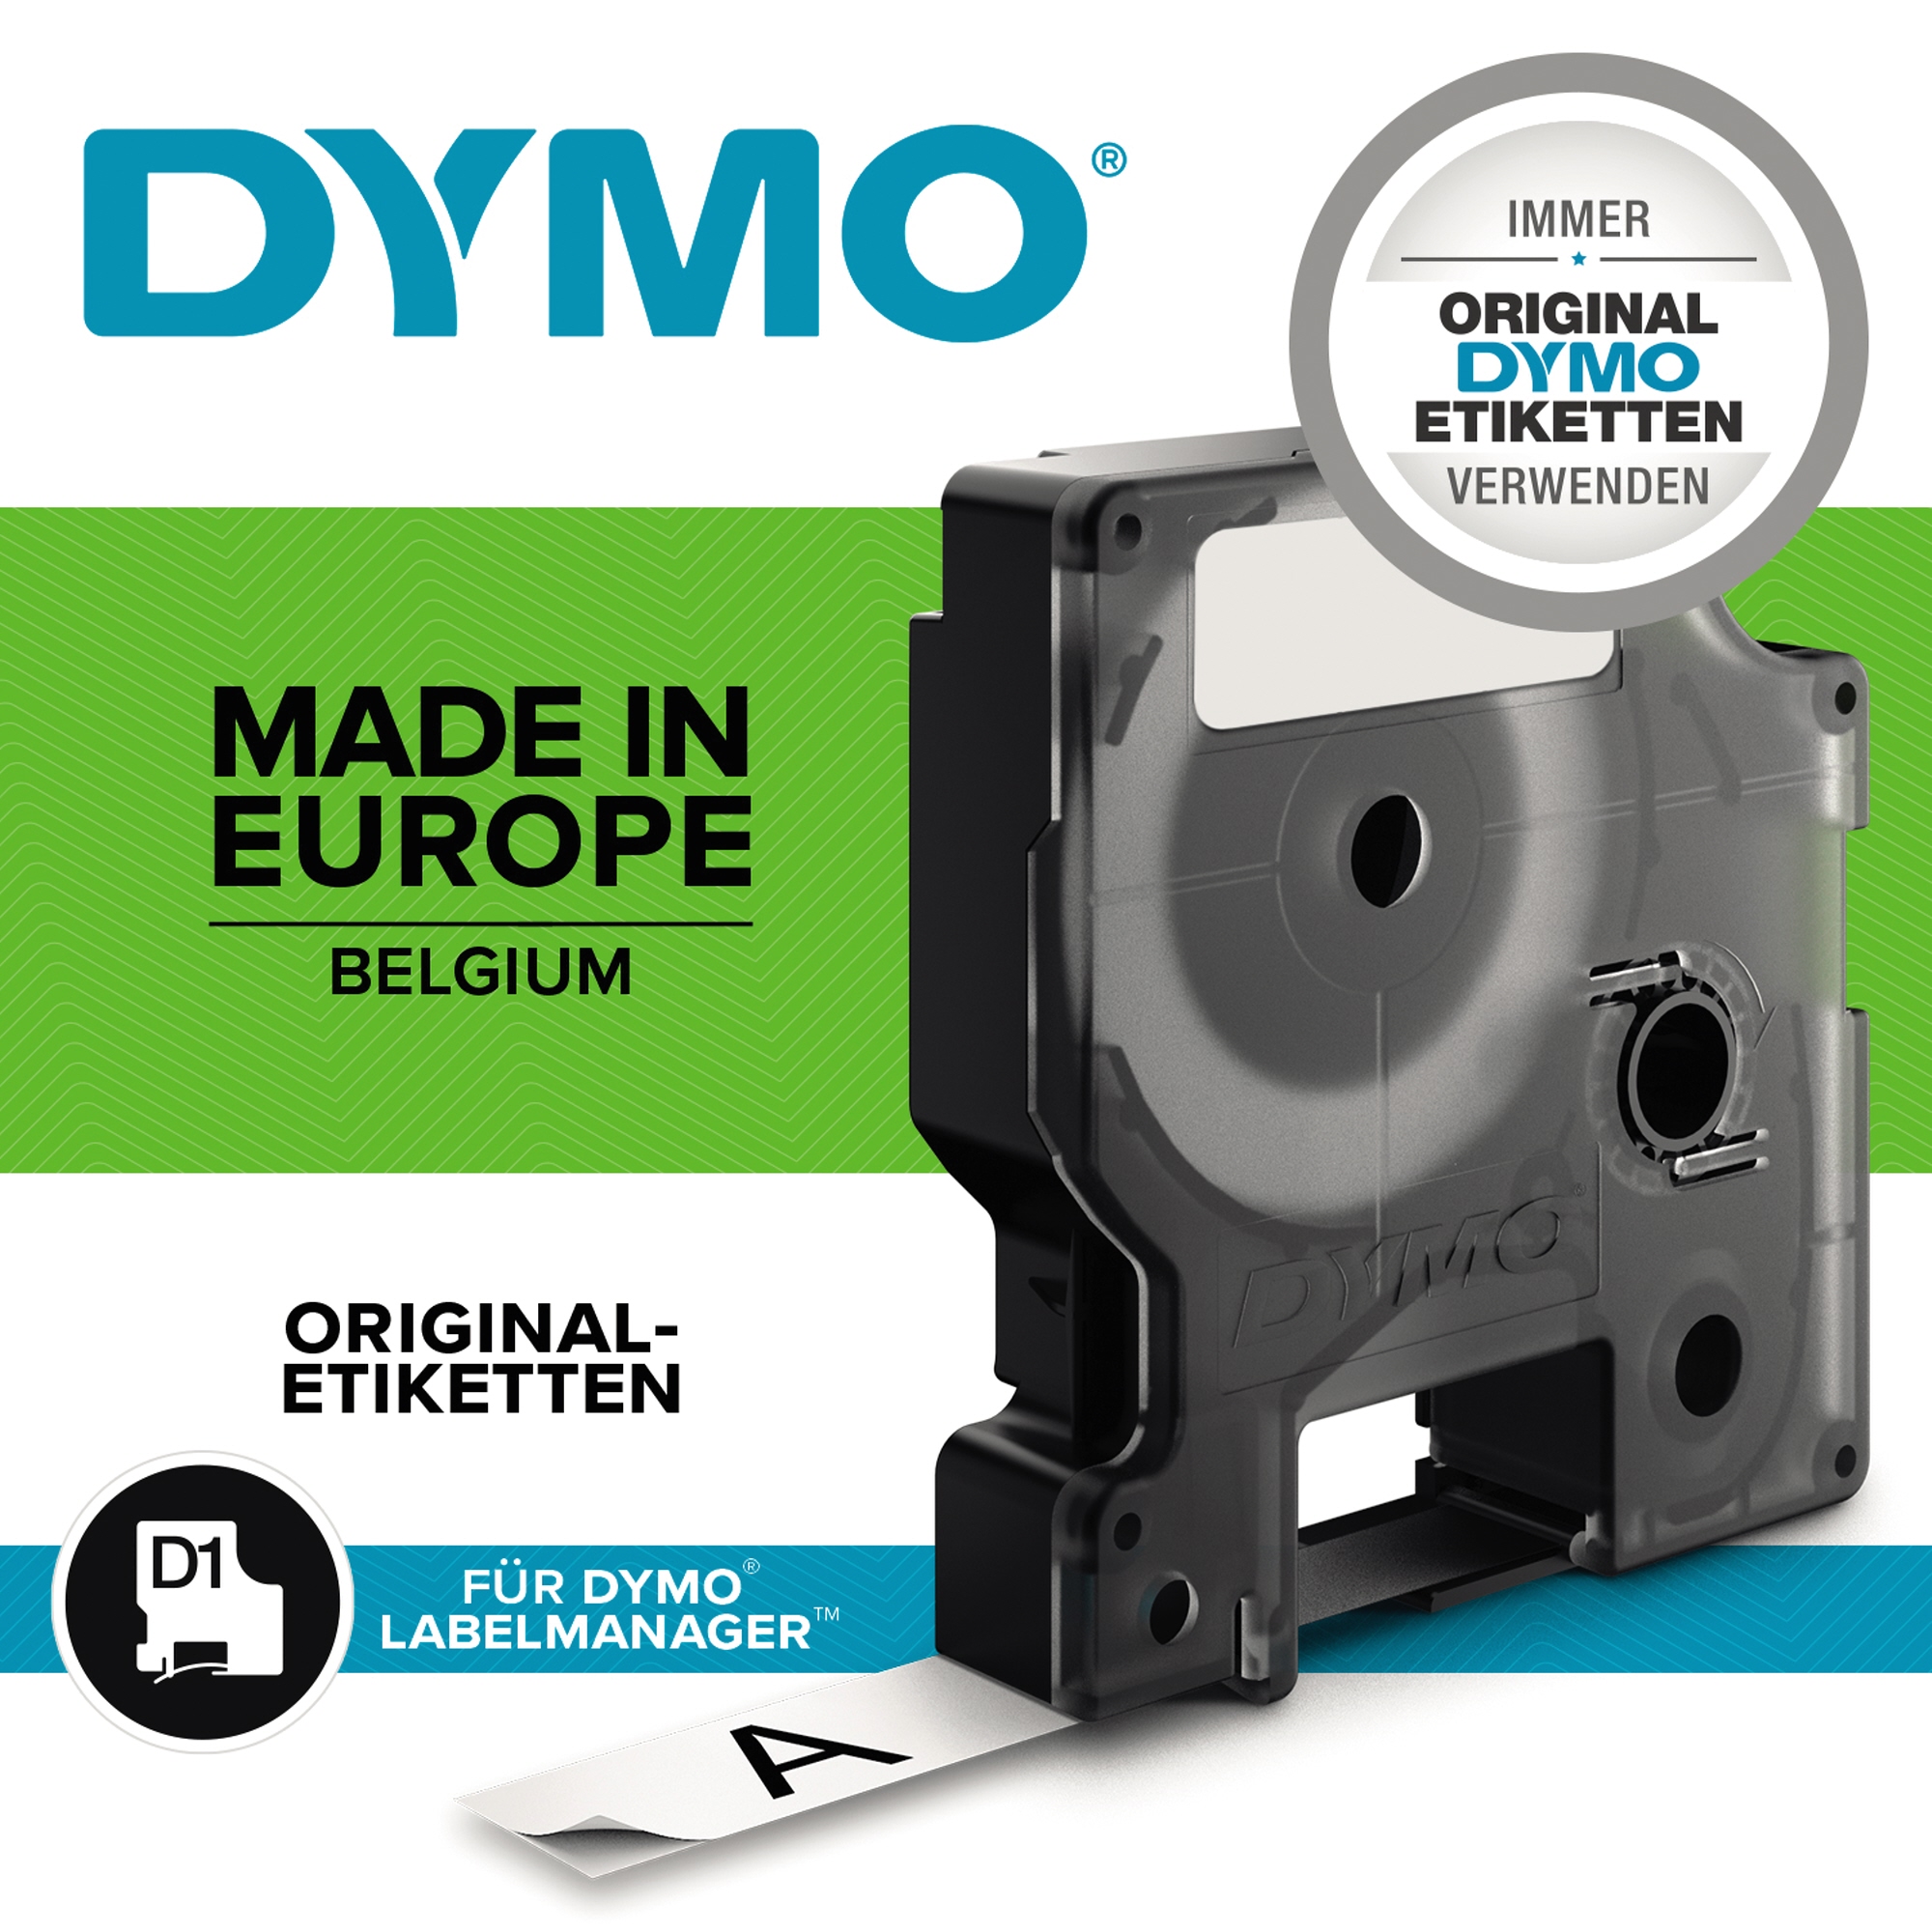 DYMO® Schriftbandkassette D1 12 mm schwarz auf gelb